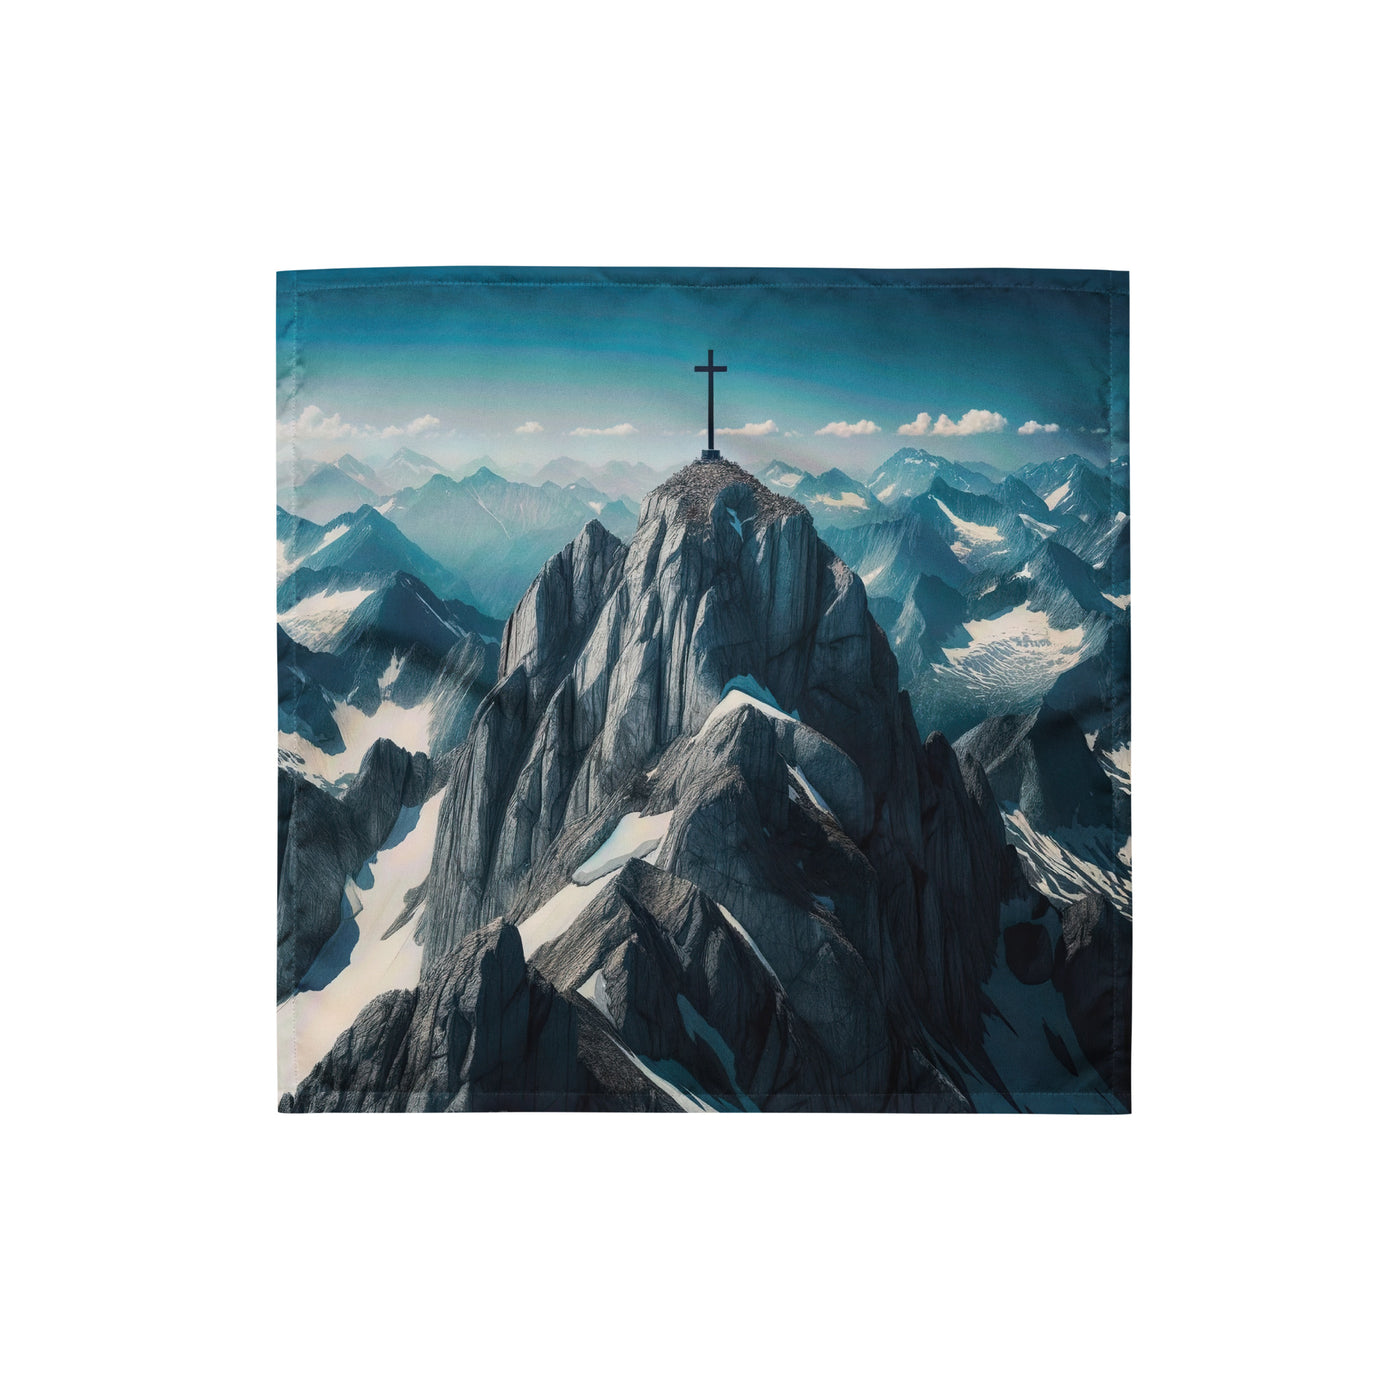 Foto der Alpen mit Gipfelkreuz an einem klaren Tag, schneebedeckte Spitzen vor blauem Himmel - Bandana (All-Over Print) berge xxx yyy zzz S